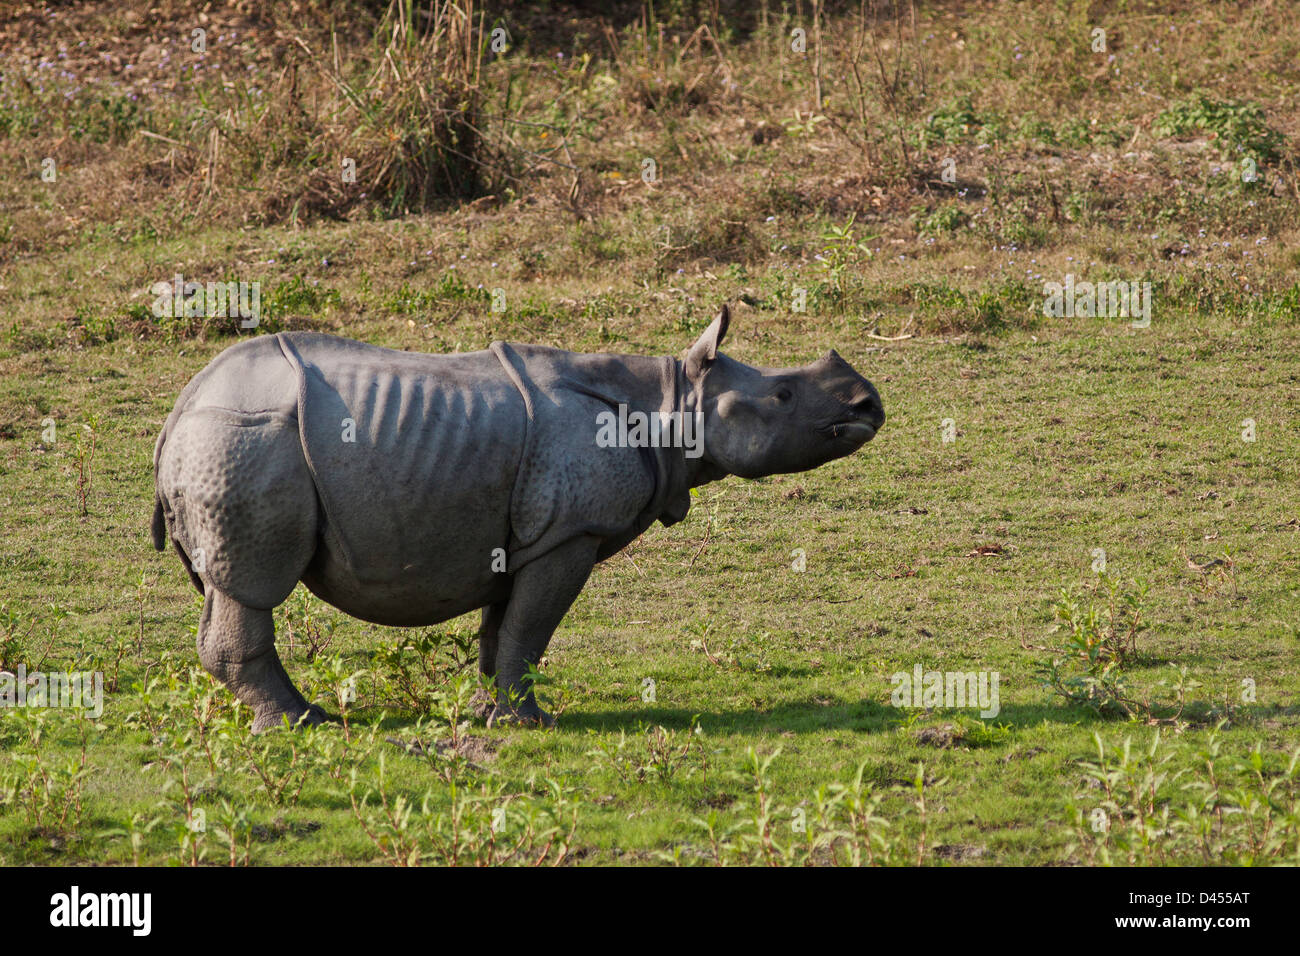 Les jeunes dans les prairies ouvertes rhinocéros, parc national de Kaziranga, Inde Banque D'Images